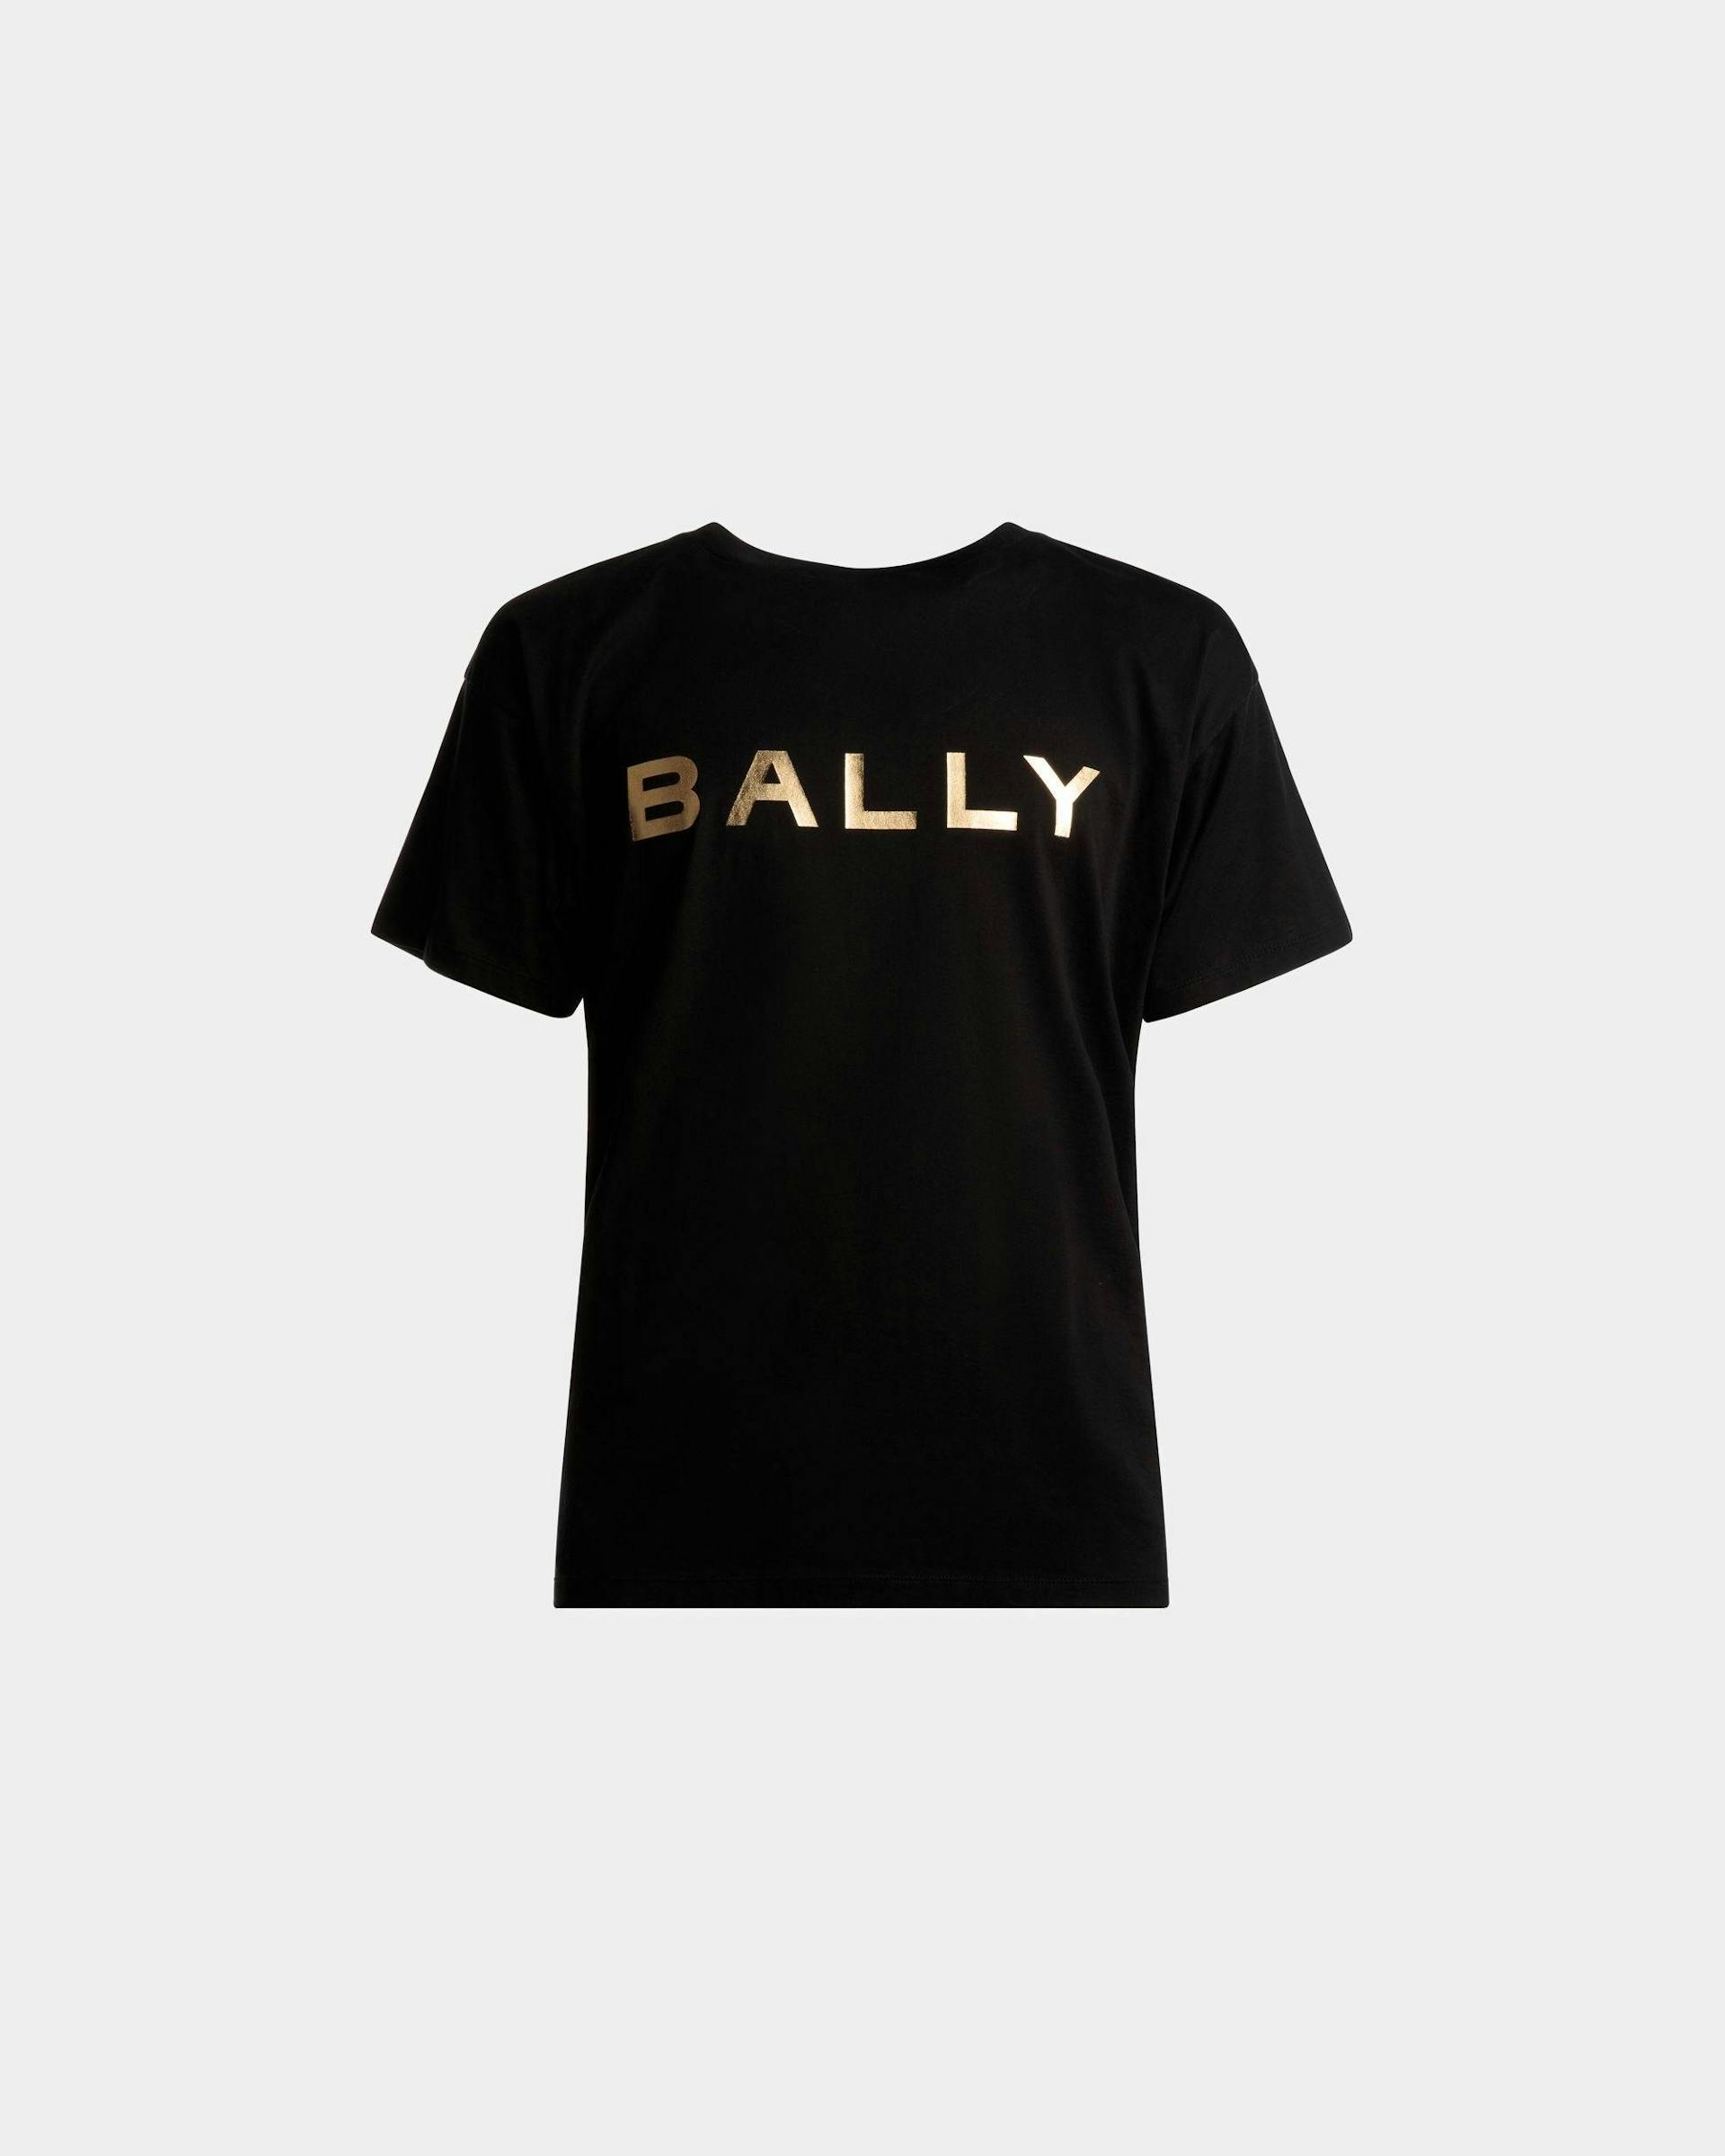 Men's Logo T-Shirt In Black Cotton | Bally | Still Life Front